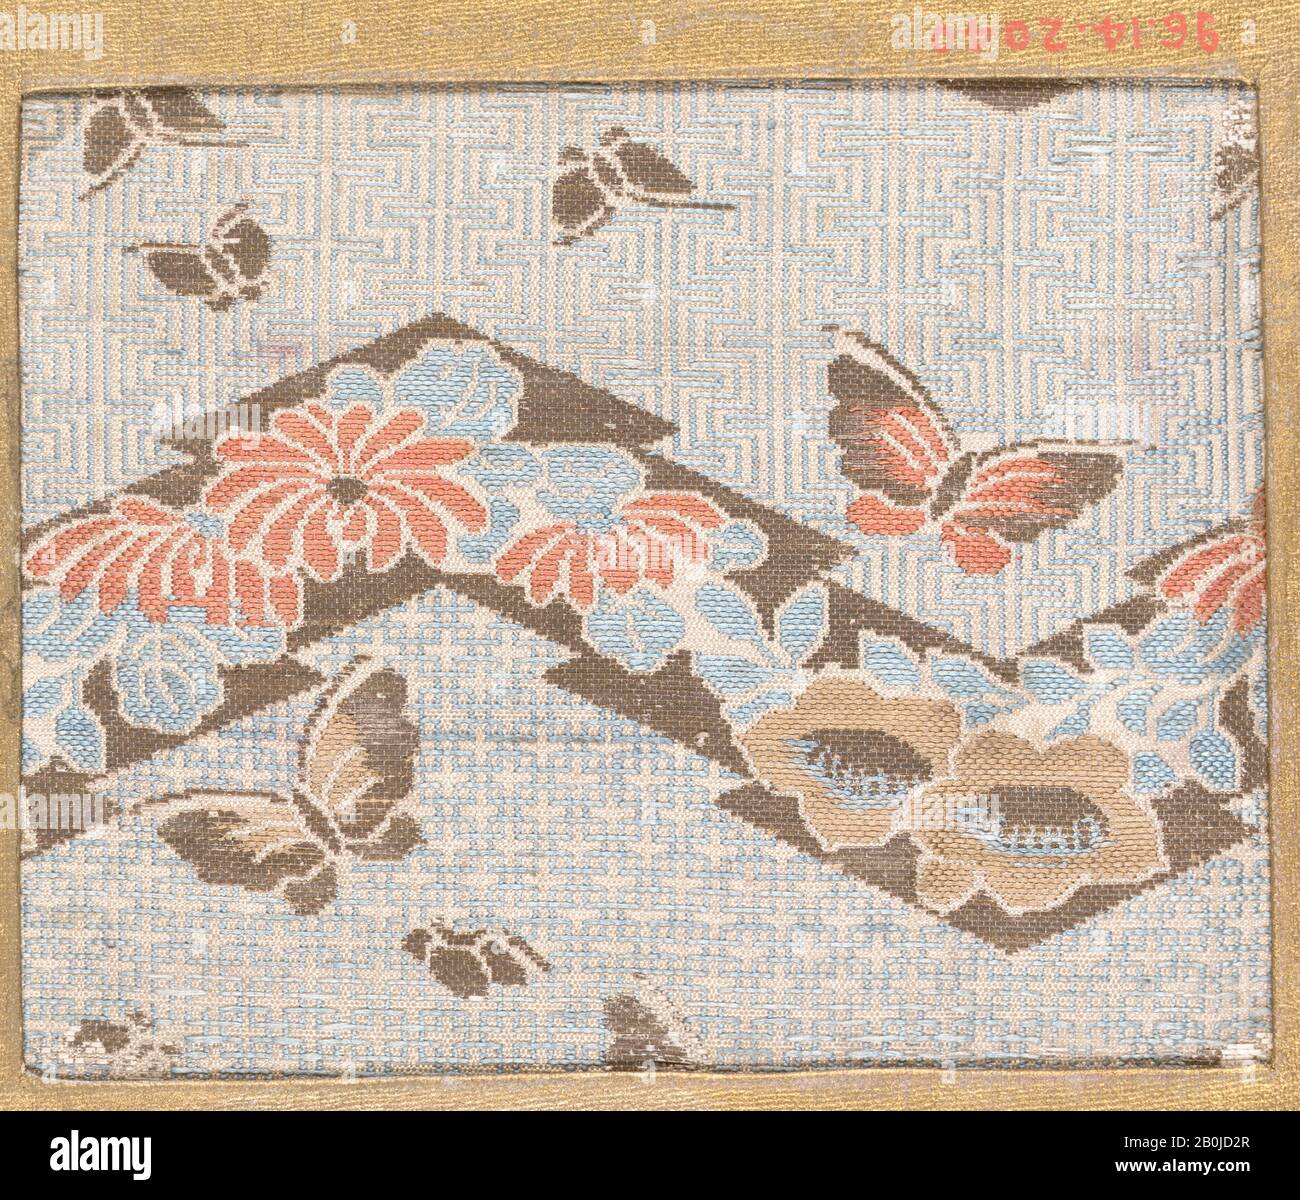 Pièce, Japon, XVIIIe–XIXe siècle, Japon, soie, 3 1/4 x 4 po. (8,26 x 10,16 cm), textiles-tissés Banque D'Images